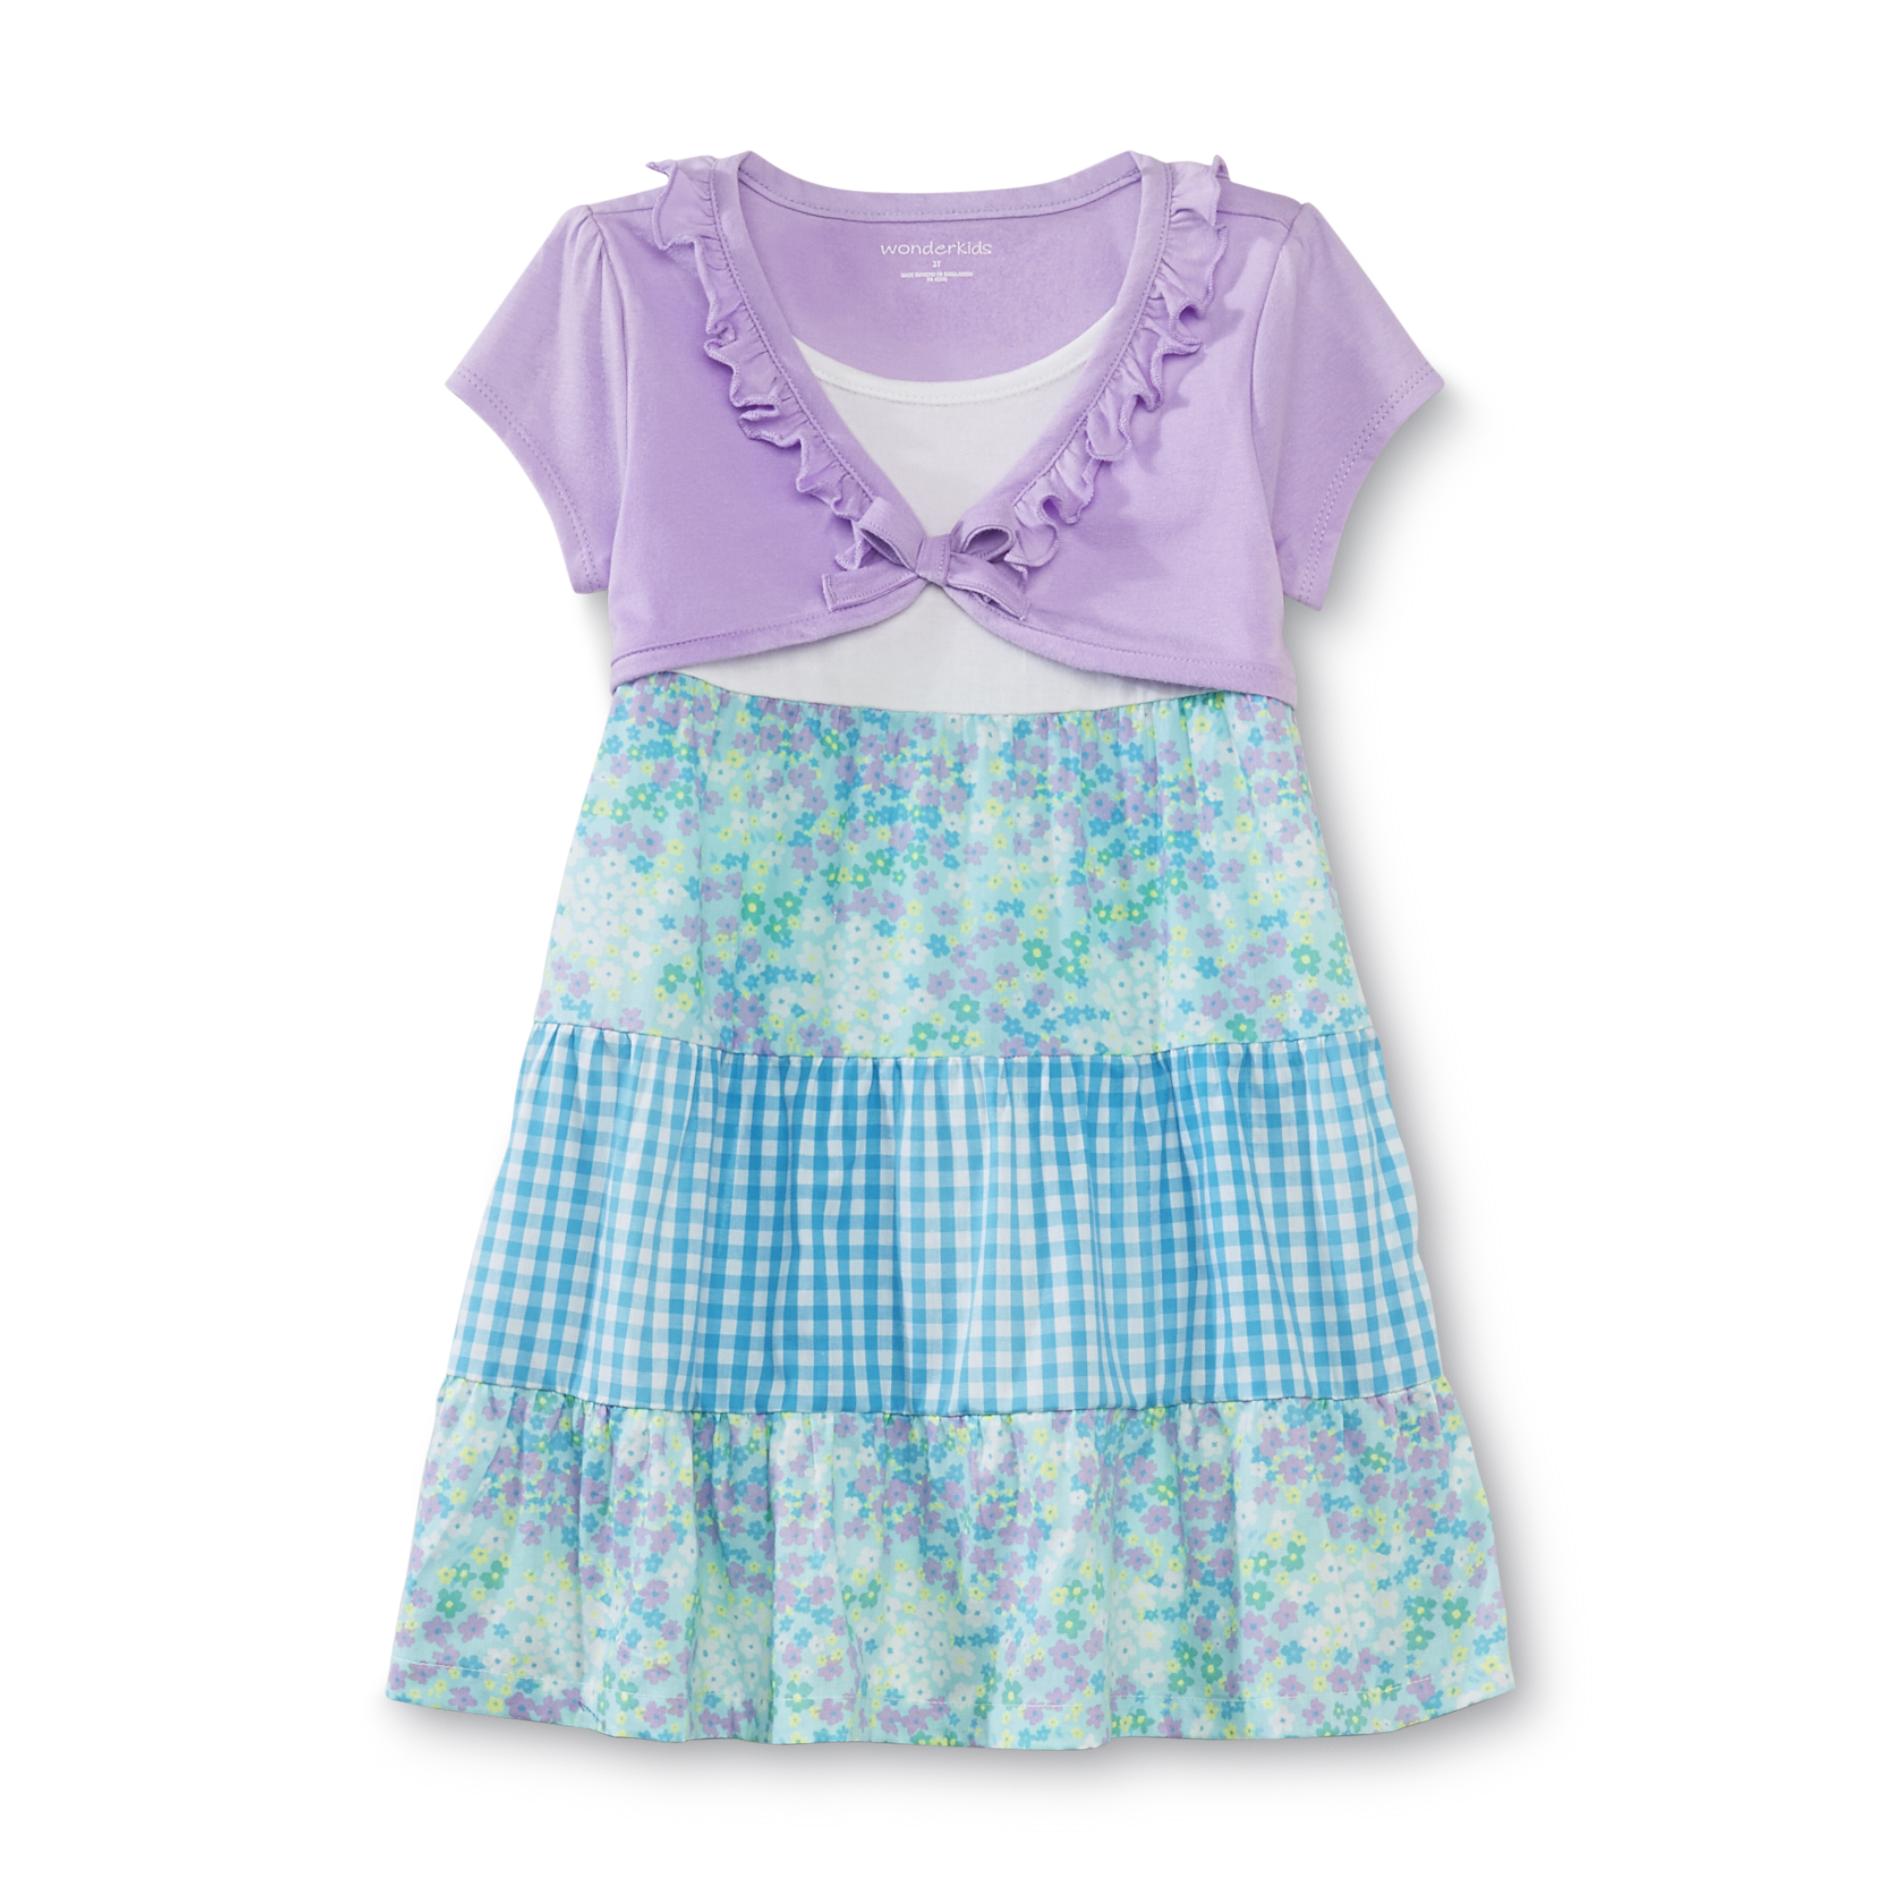 WonderKids Infant & Toddler Girl's Dress